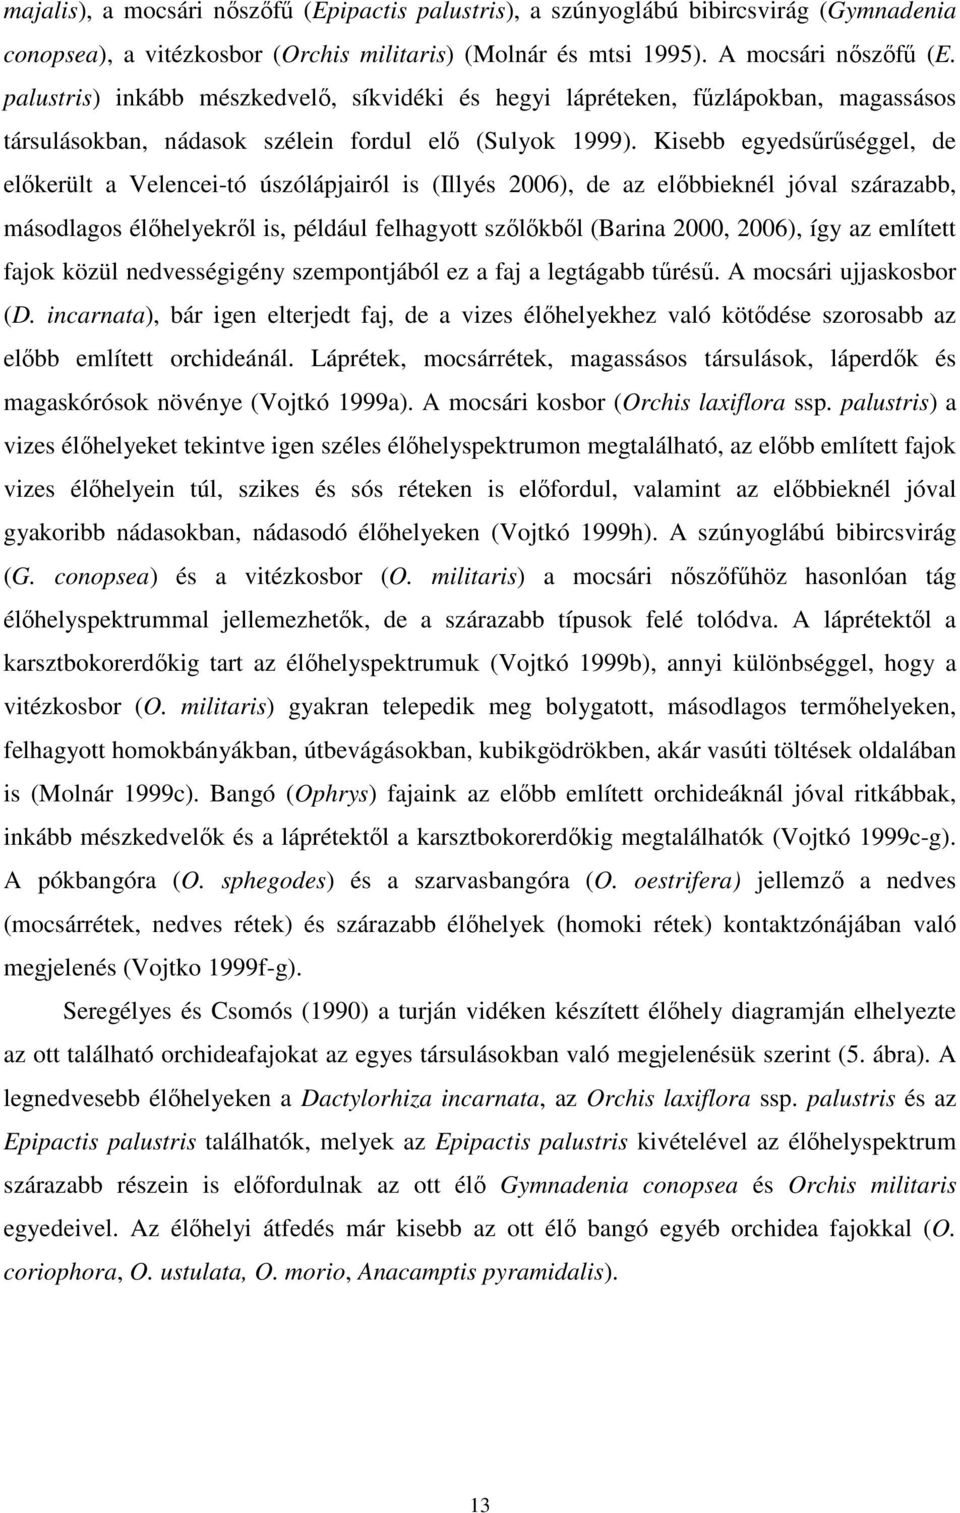 Kisebb egyedsőrőséggel, de elıkerült a Velencei-tó úszólápjairól is (Illyés 2006), de az elıbbieknél jóval szárazabb, másodlagos élıhelyekrıl is, például felhagyott szılıkbıl (Barina 2000, 2006), így